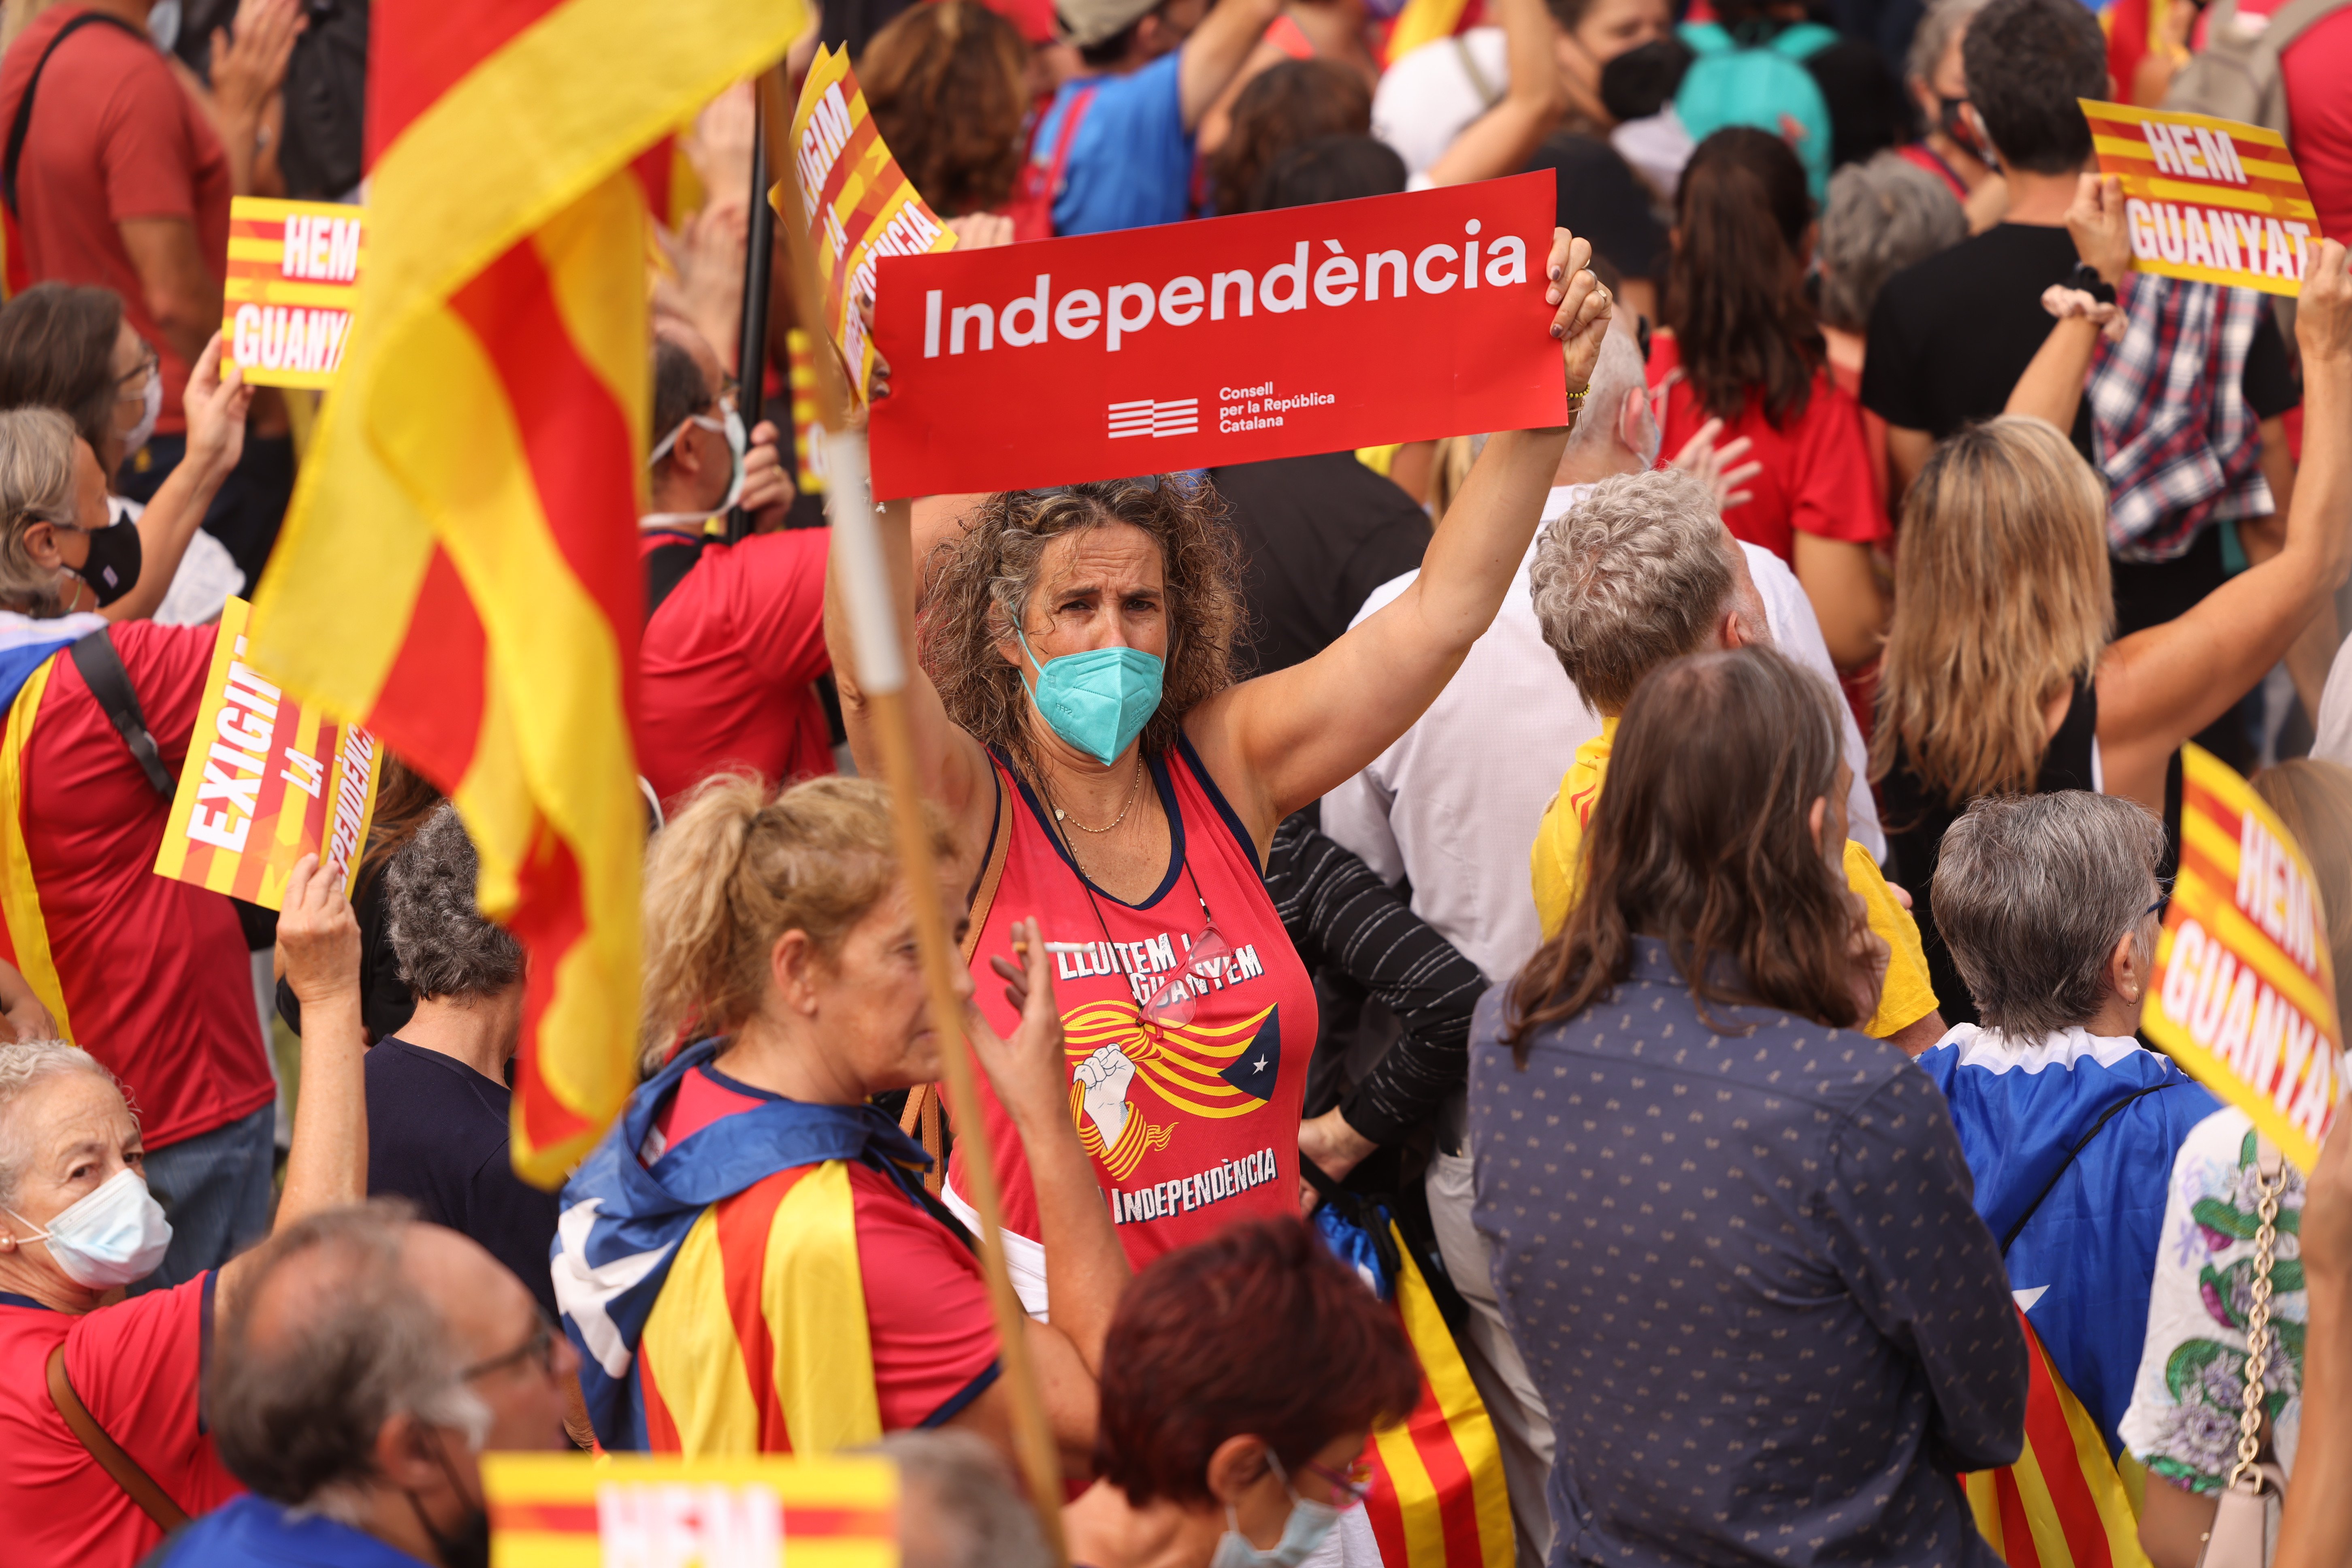 ¿Crees que el independentismo retrocede?